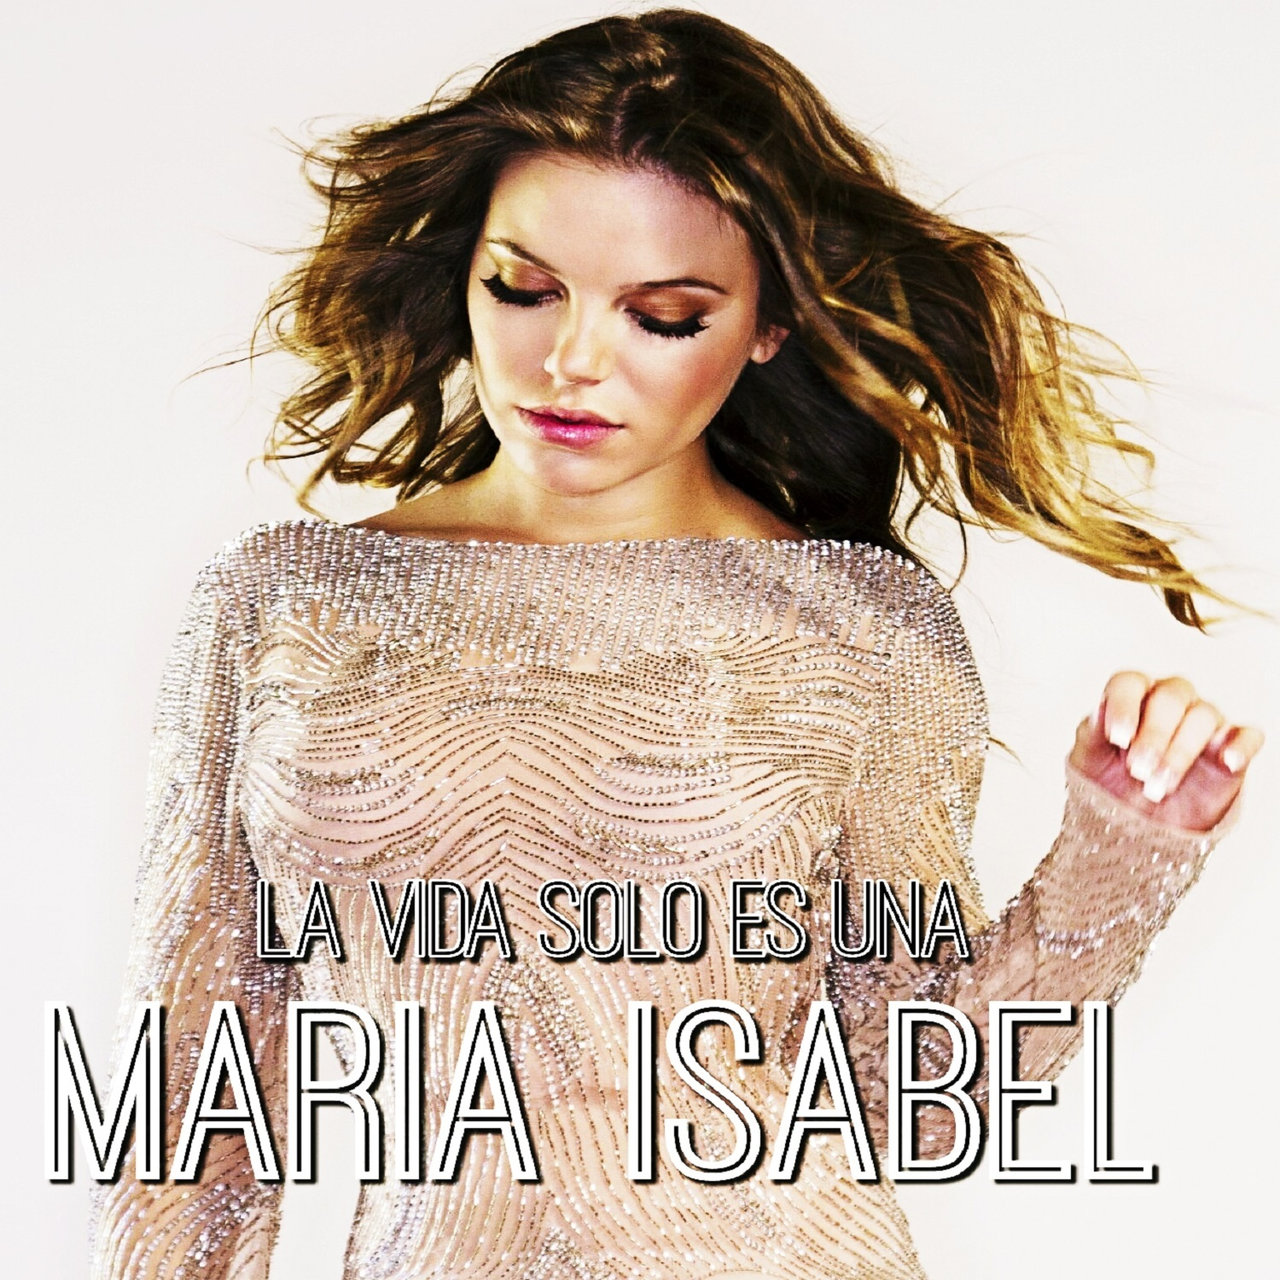 María Isabel — La Vida Sólo Es Una cover artwork